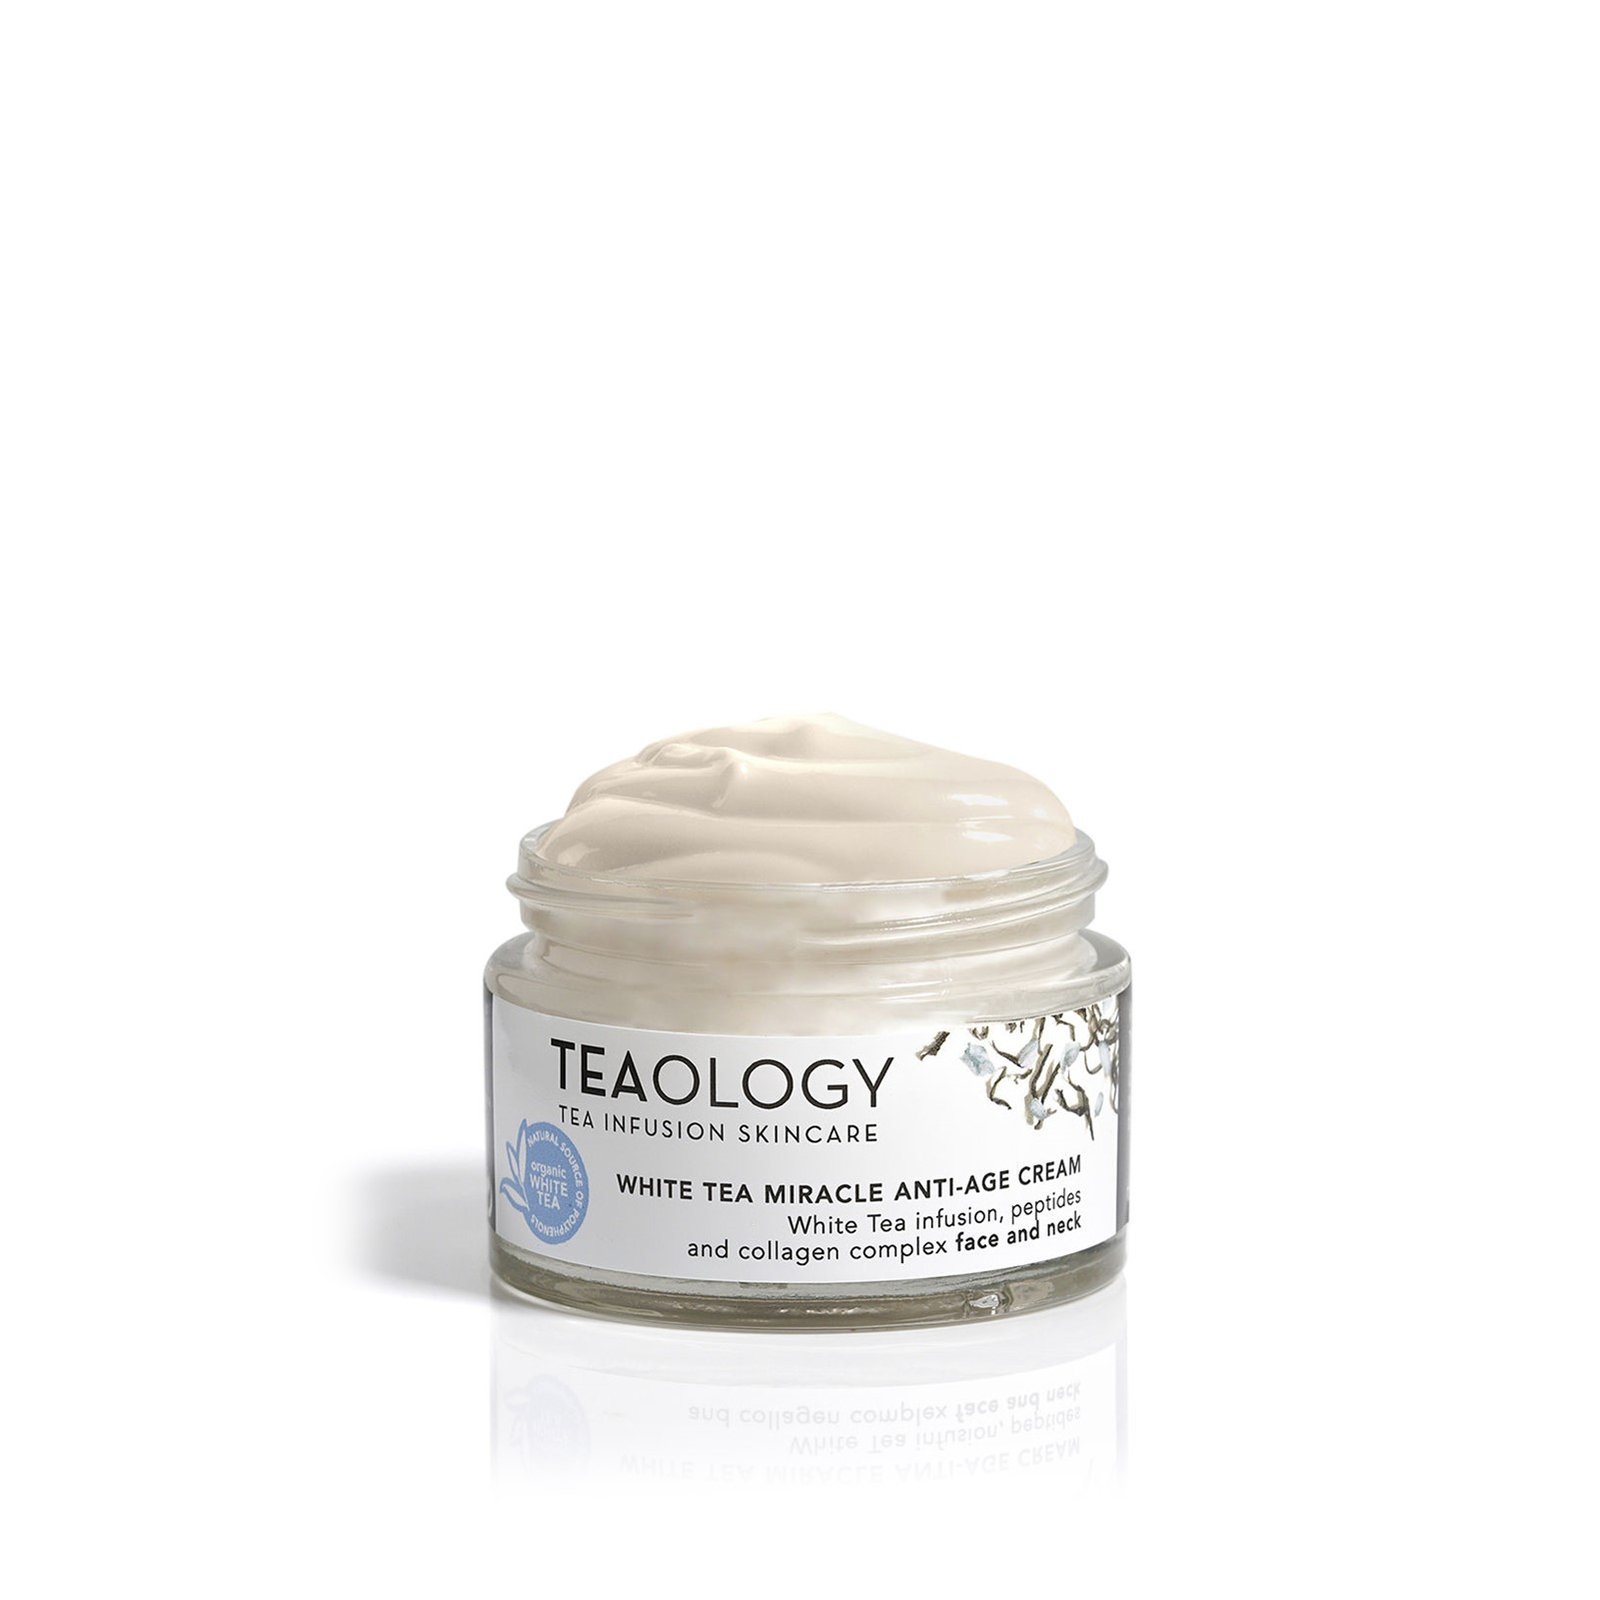 Teaology White Tea Miracle Anti-Age Cream 50ml (1.6 fl oz)